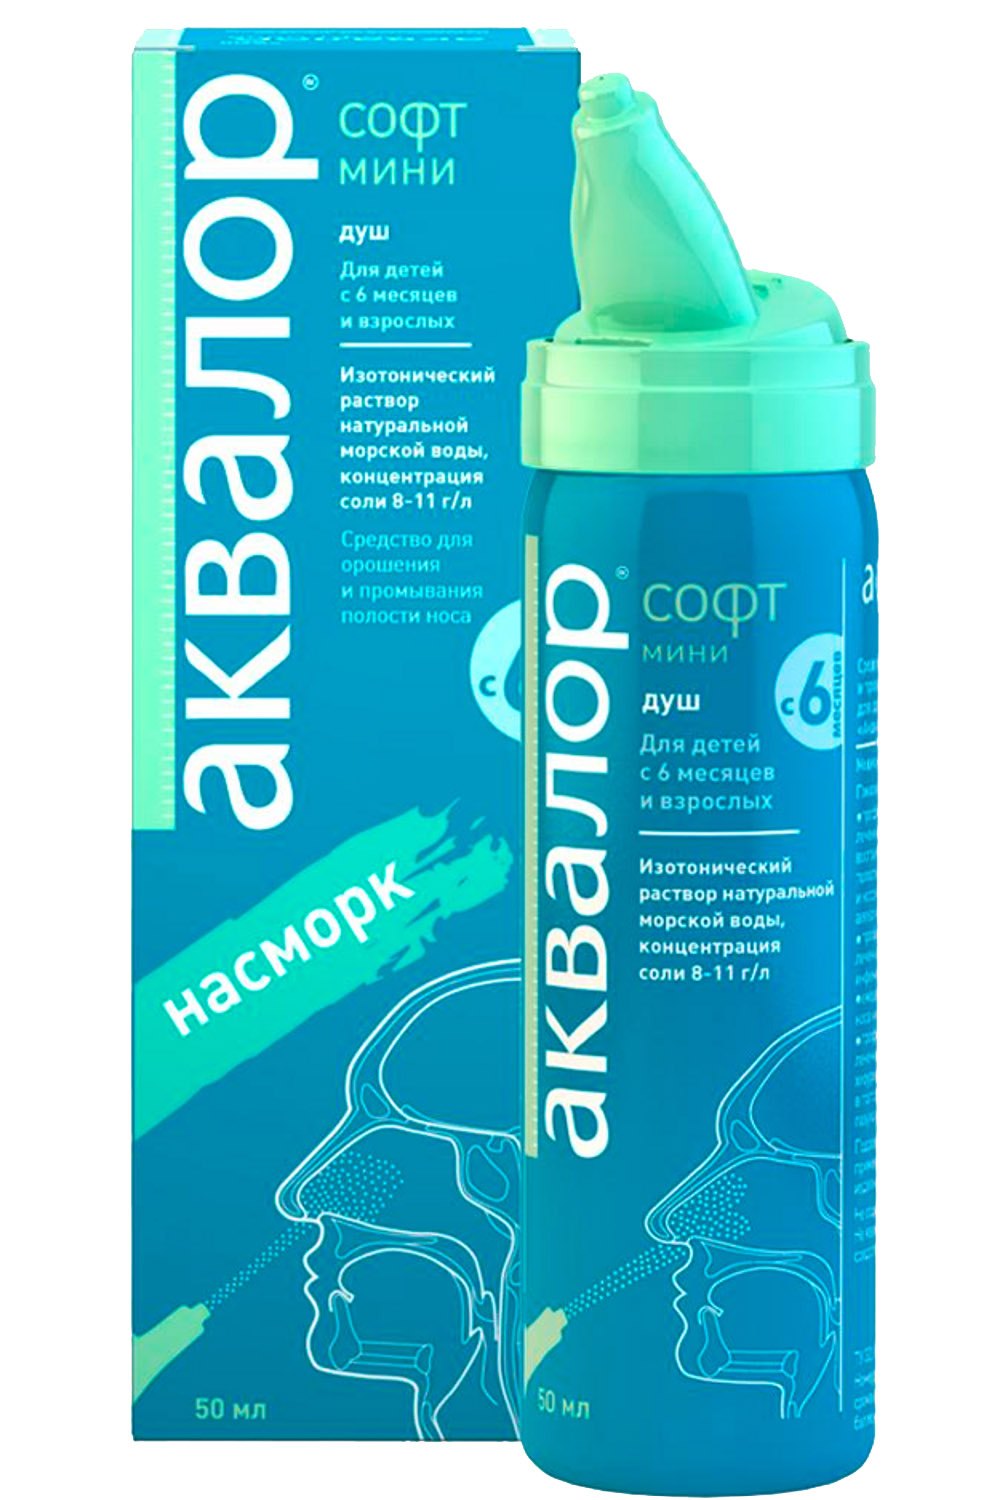 Aqualor Мини-средство для орошения и промывания полости носа, 50 мл (Aqualor, Софт)